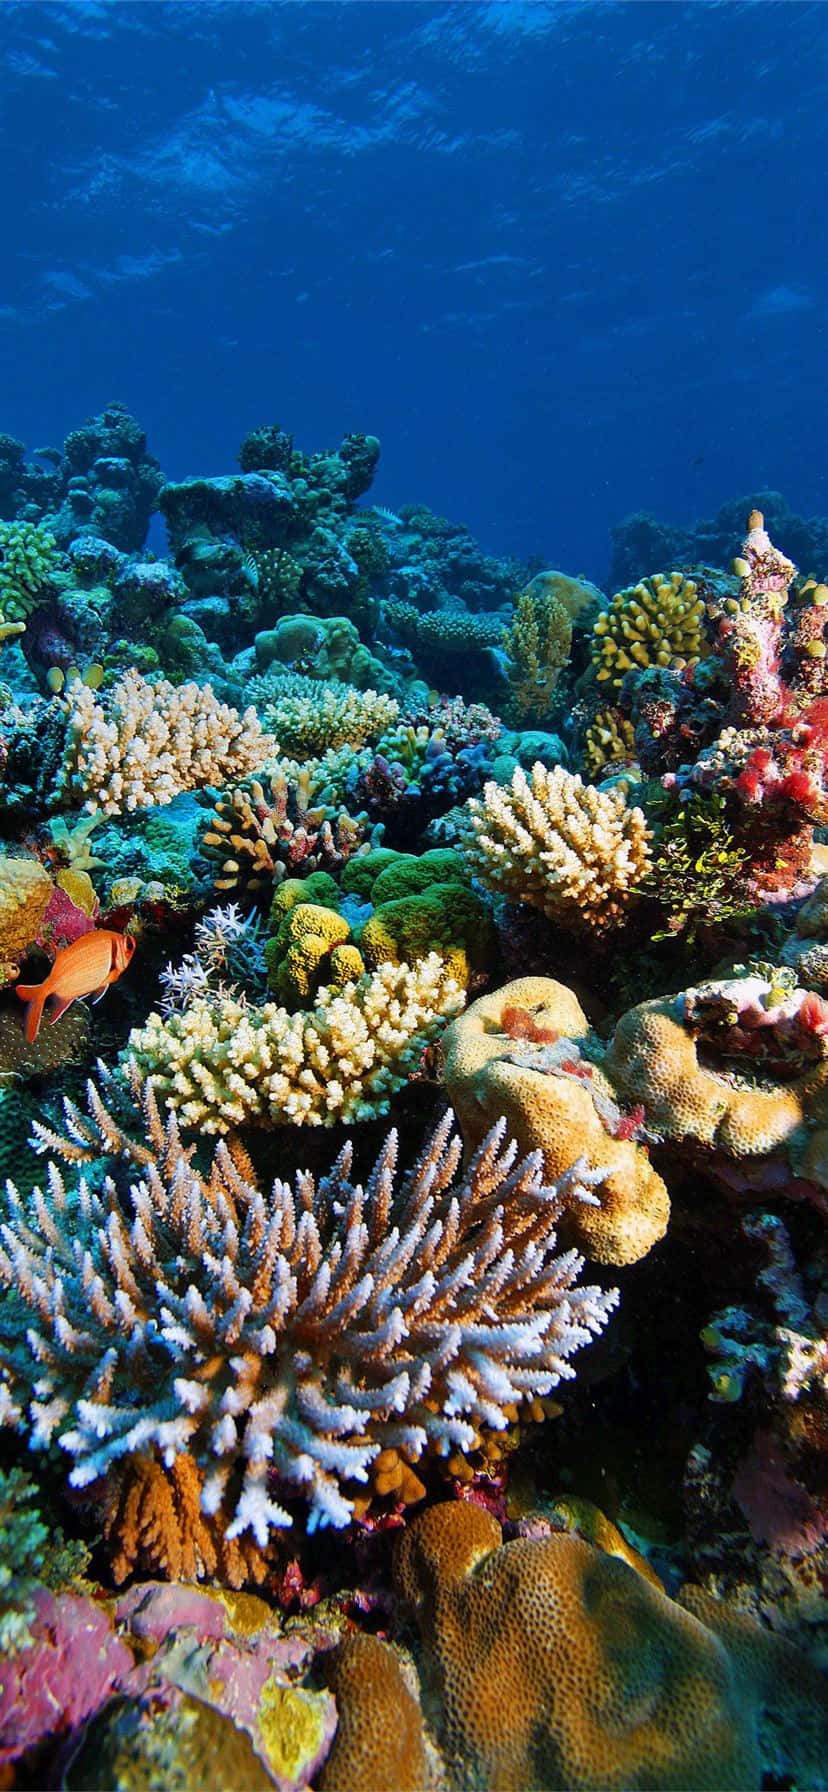 Unavista Mozzafiato Di Una Vibrante Barriera Corallina.